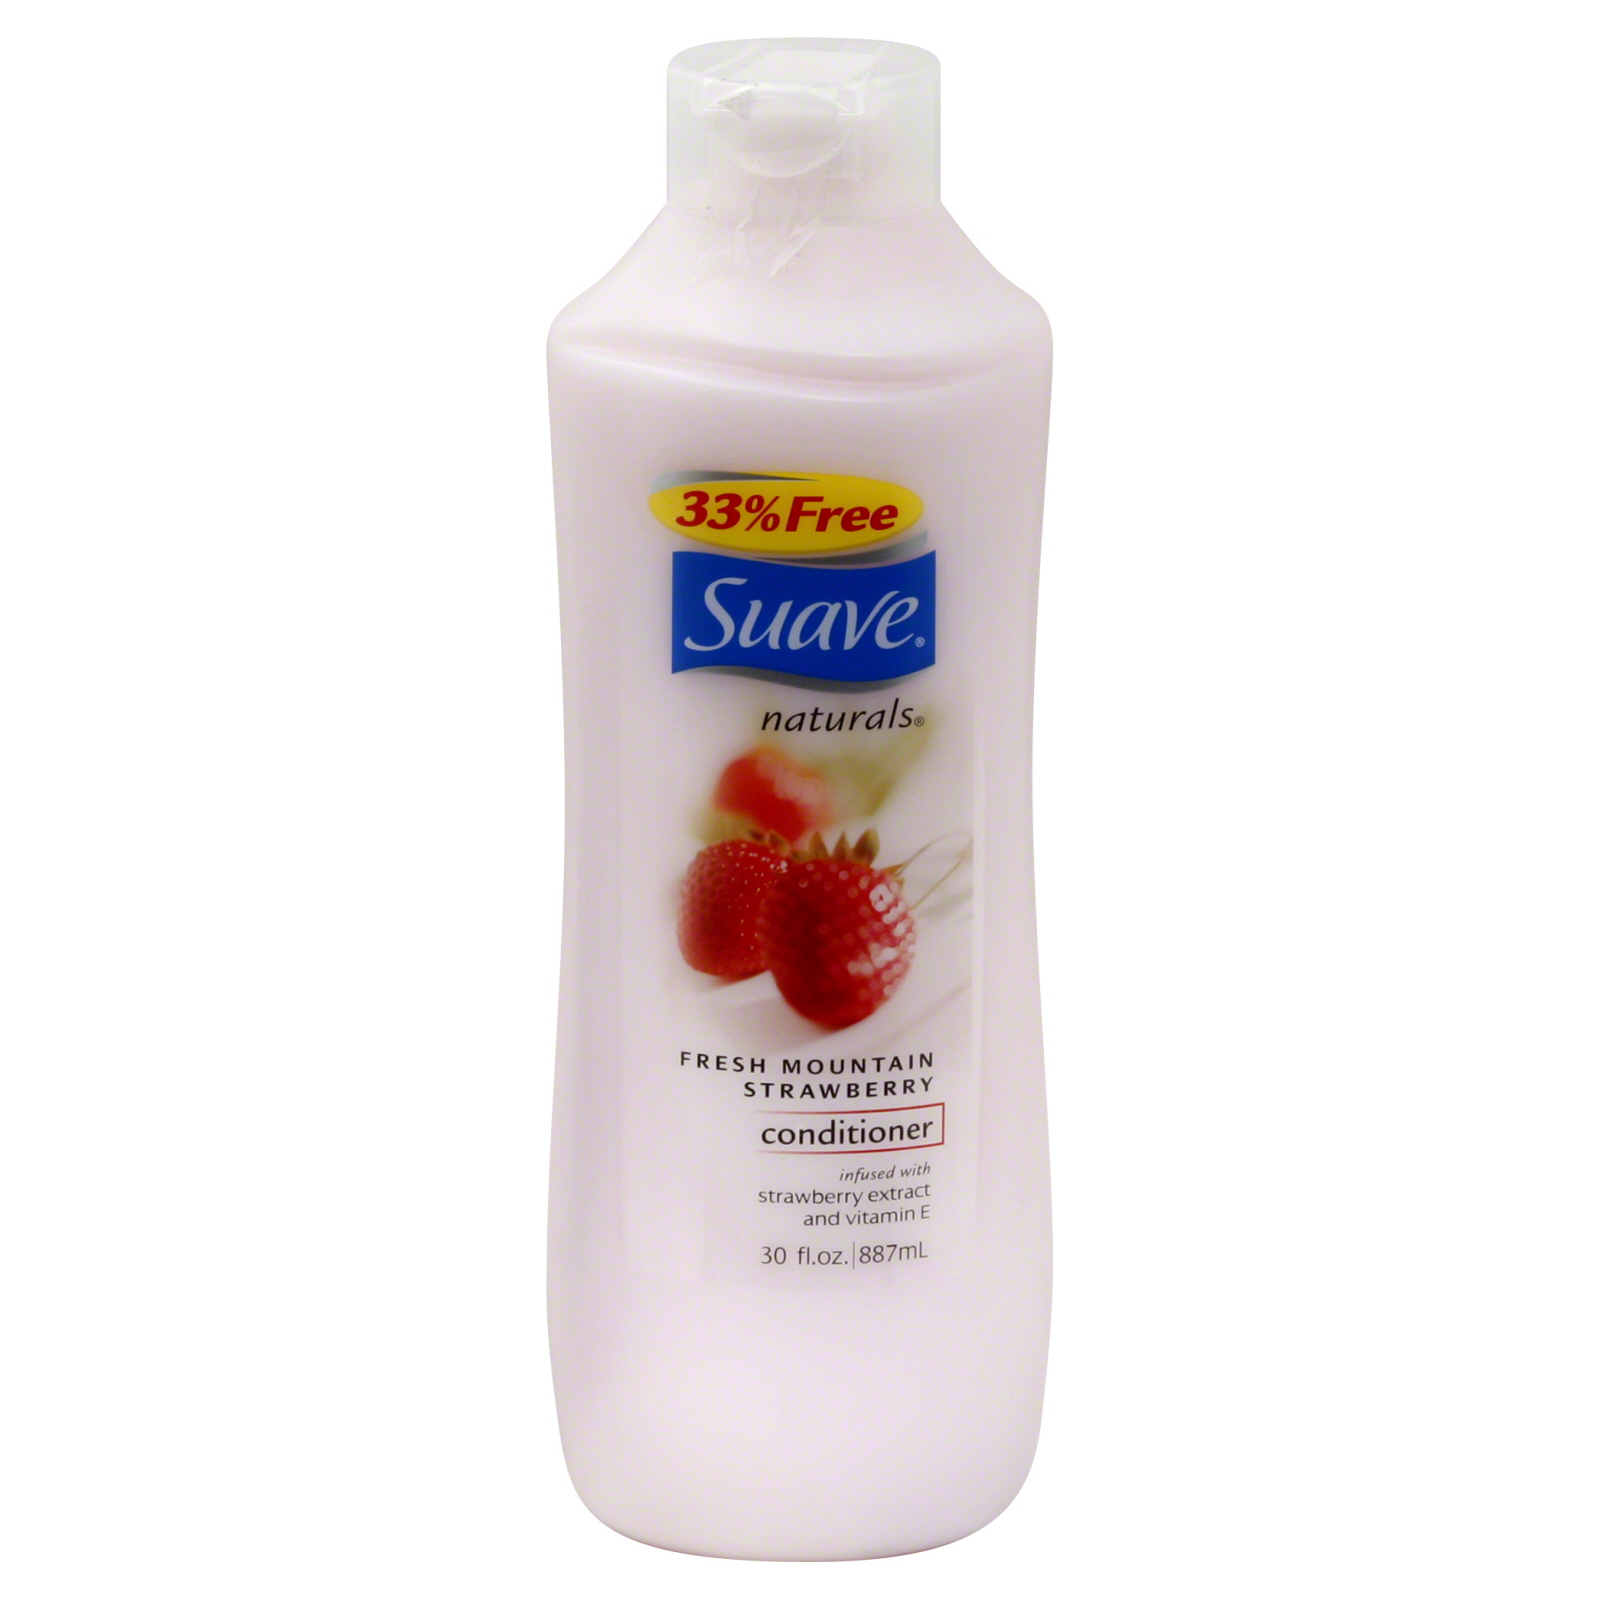 Suave Naturals Conditioner, Fresh Mountain Strawberry, 30 fl oz (887 ml)